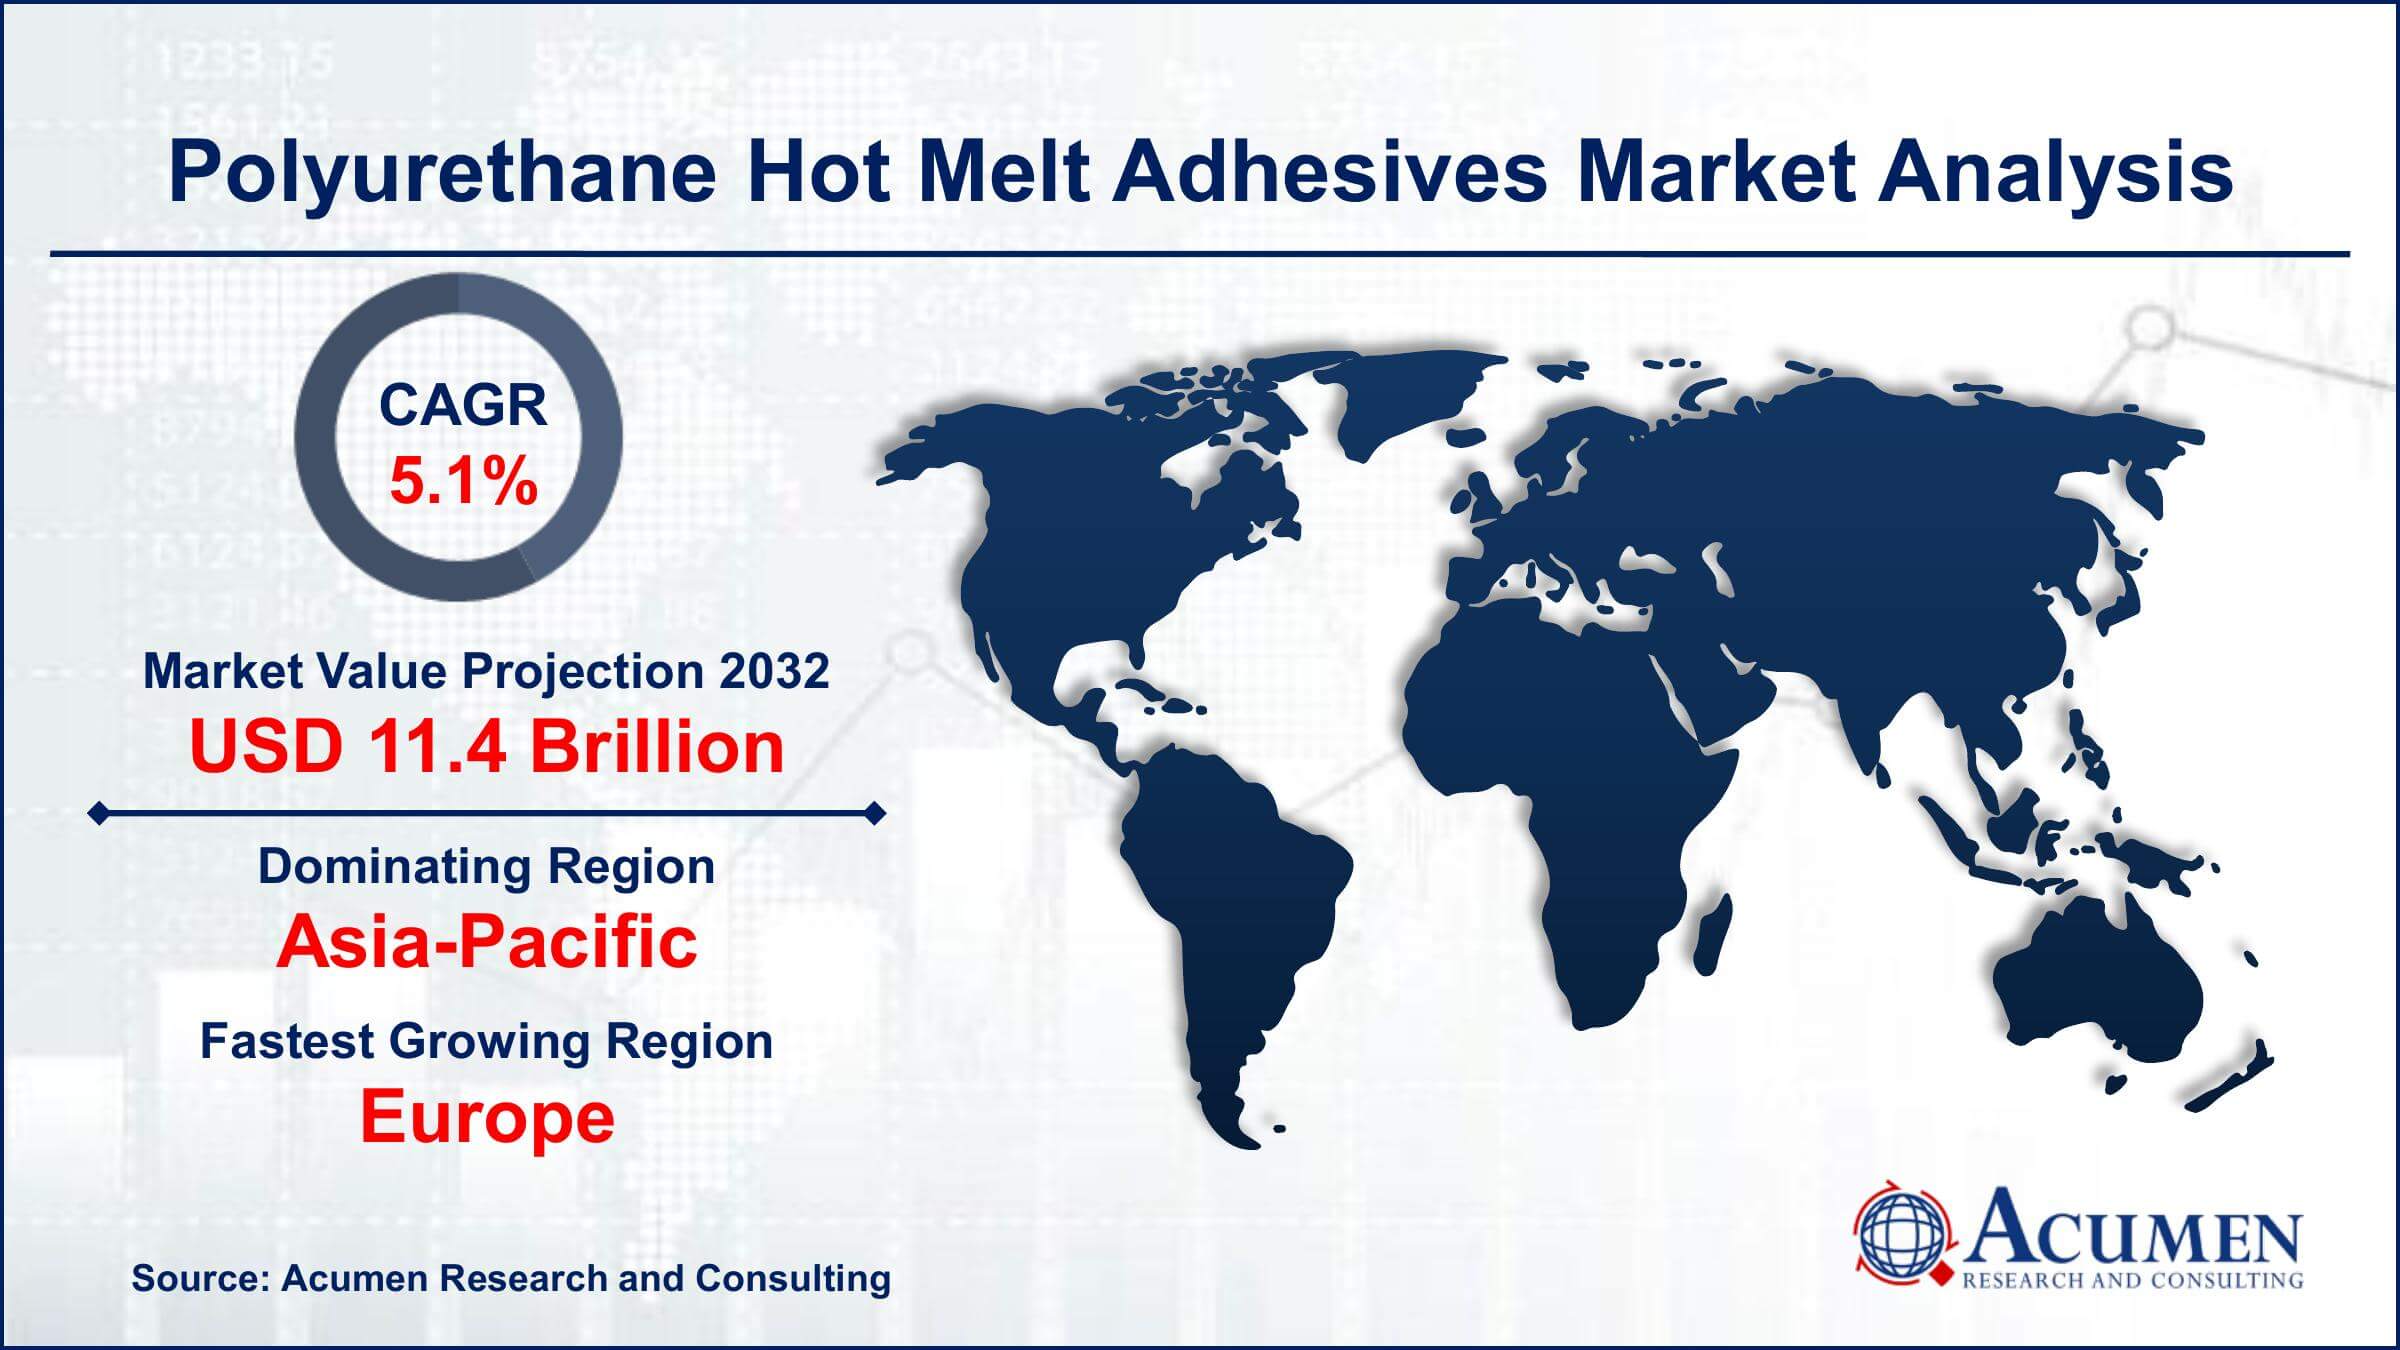 Global Polyurethane Hot Melt Adhesives Market Trends